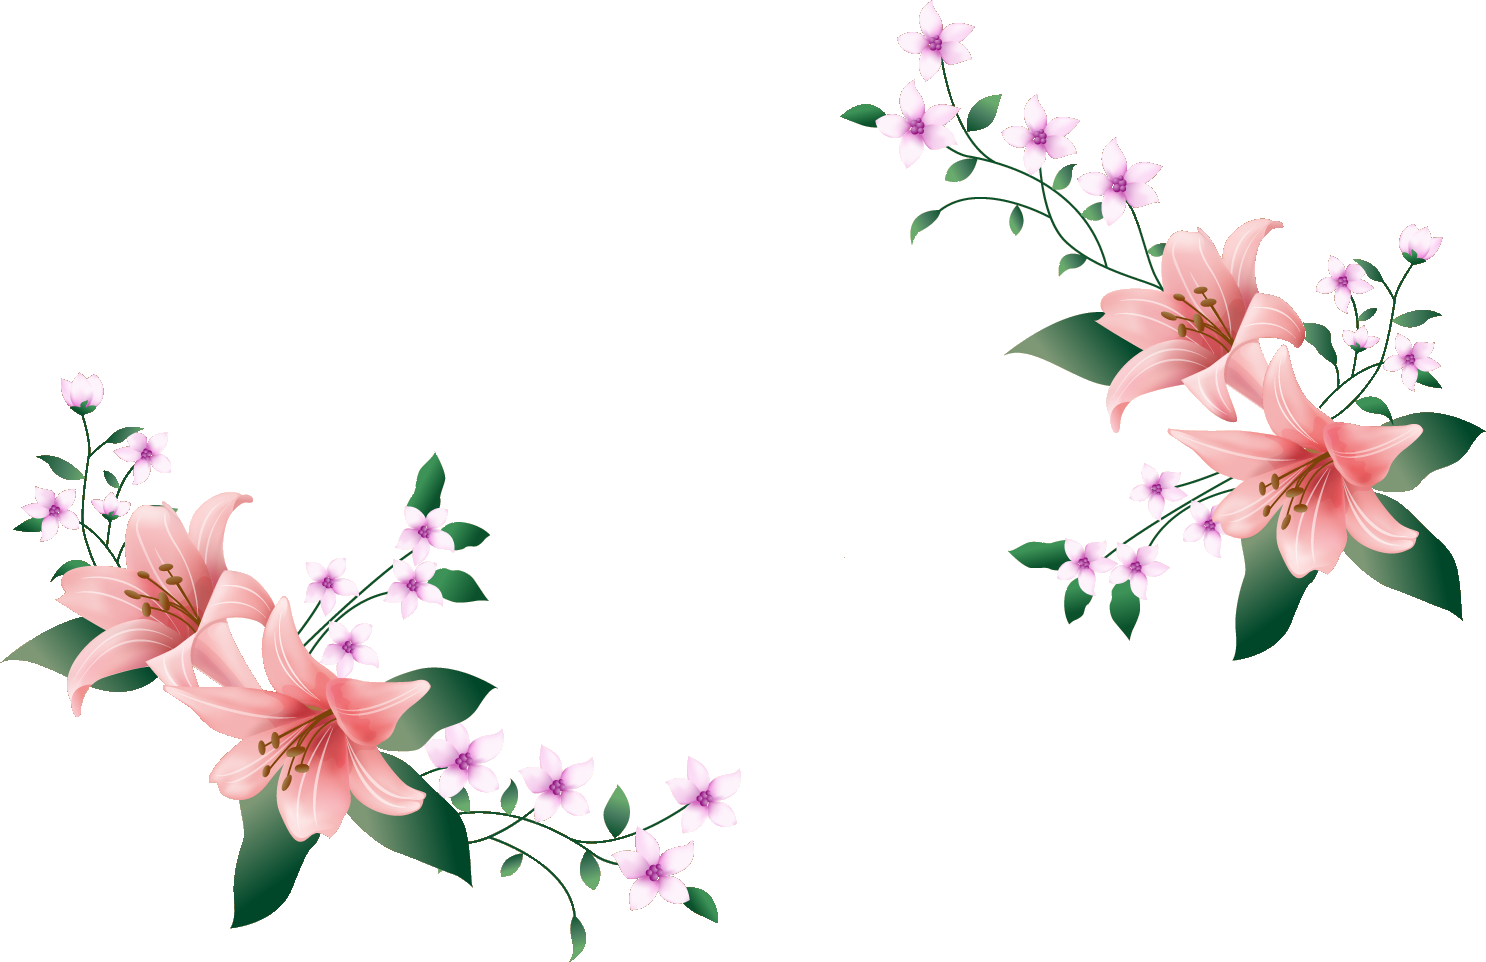 百合 ゆり の花の画像 イラスト フリー素材 No 149 ピンクのゆり